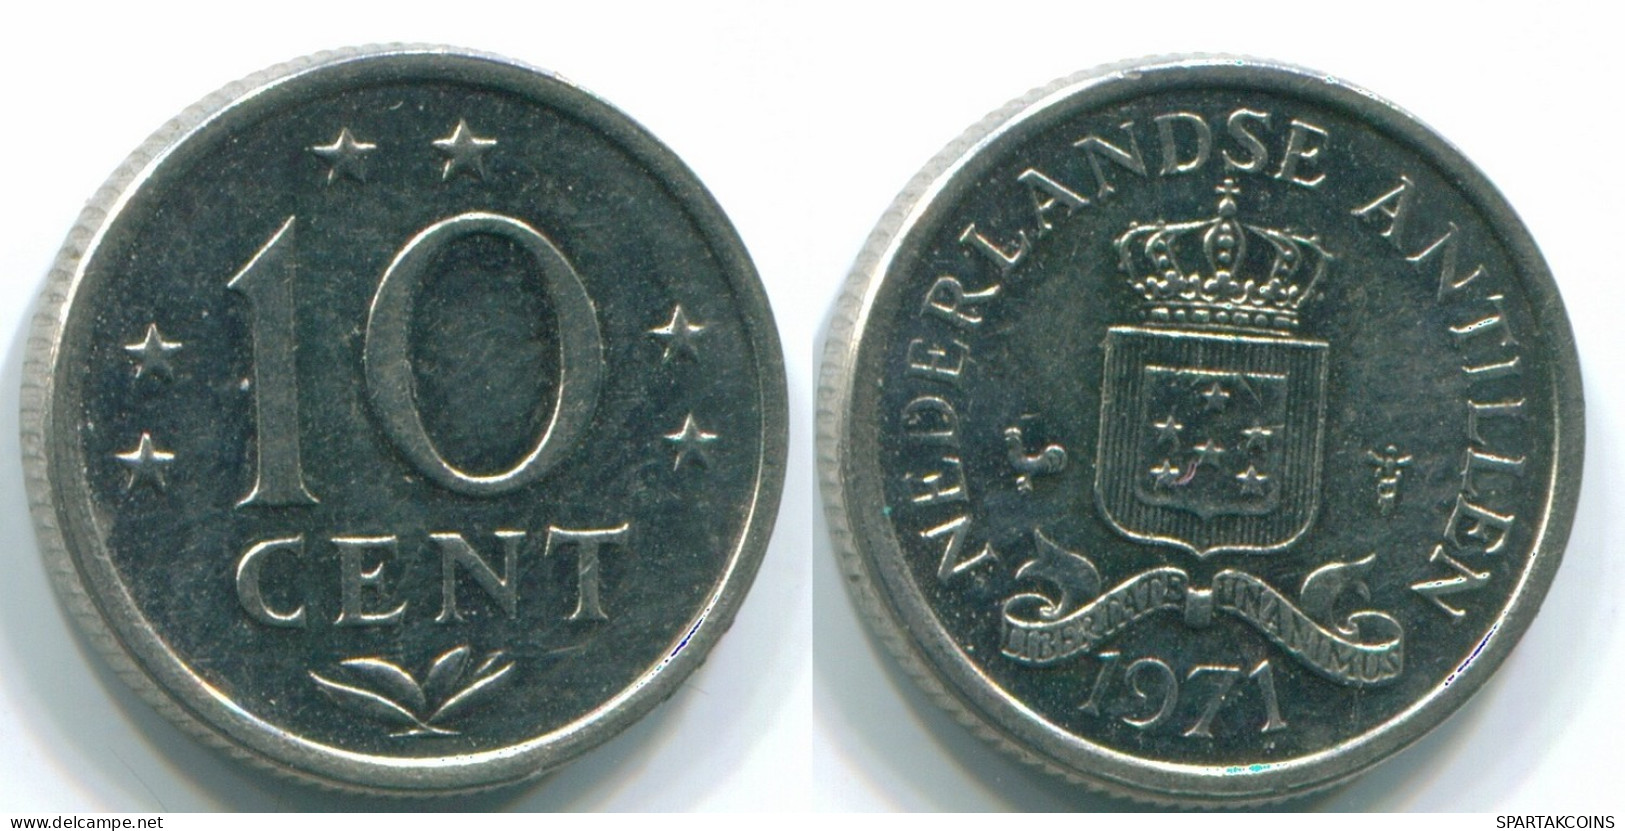 10 CENTS 1971 NETHERLANDS ANTILLES Nickel Colonial Coin #S13460.U.A - Niederländische Antillen